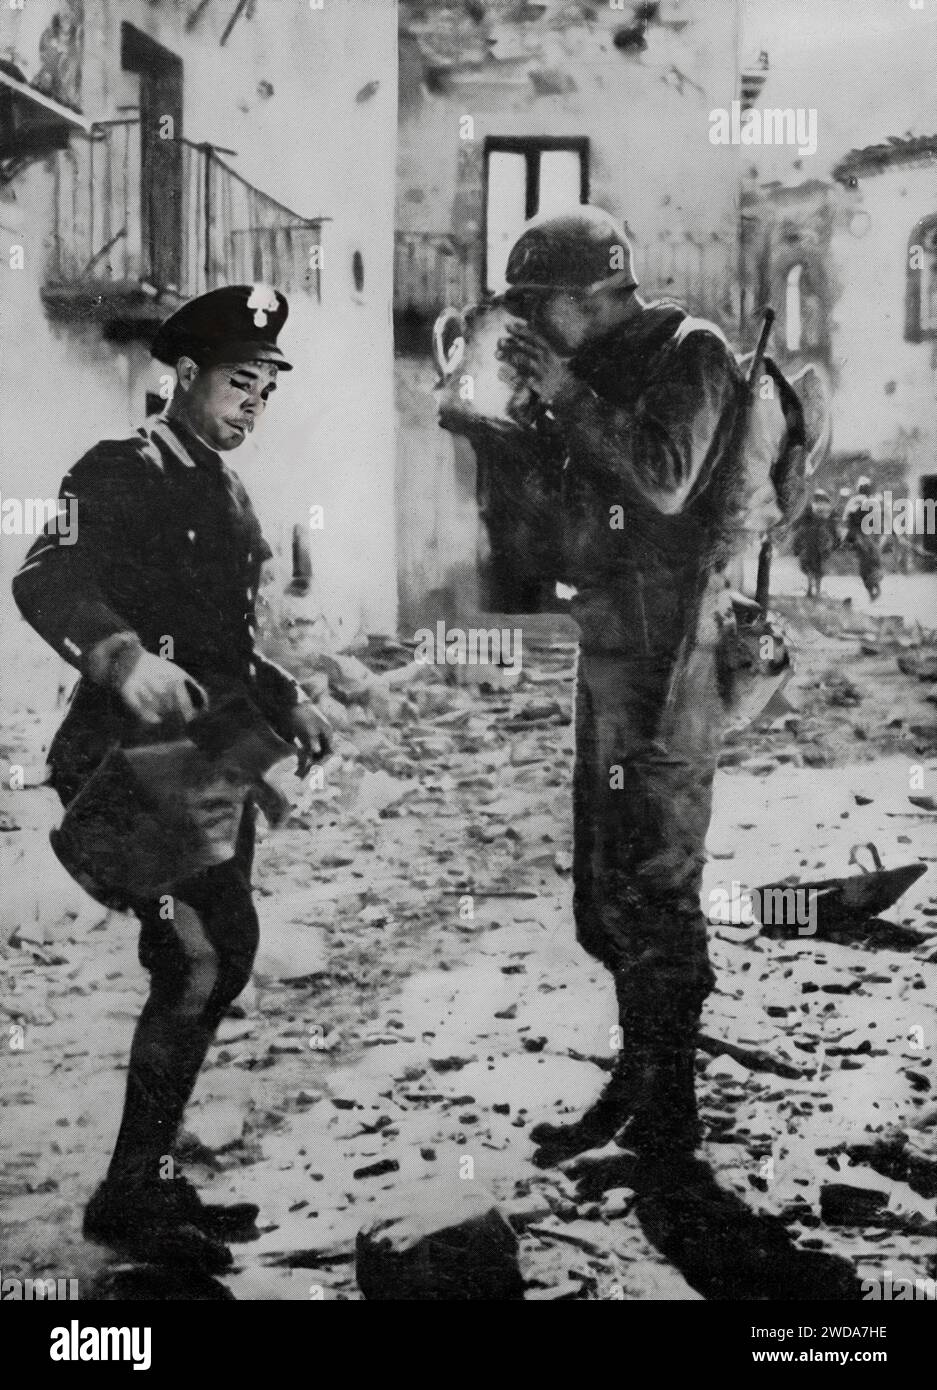 Ein italienischer Polizist gibt einem amerikanischen Soldaten am 29. September 1943 einen Drink in Neapel nach der Landung am Strand von Salerno während der Invasion Italiens im Zweiten Weltkrieg. Stockfoto